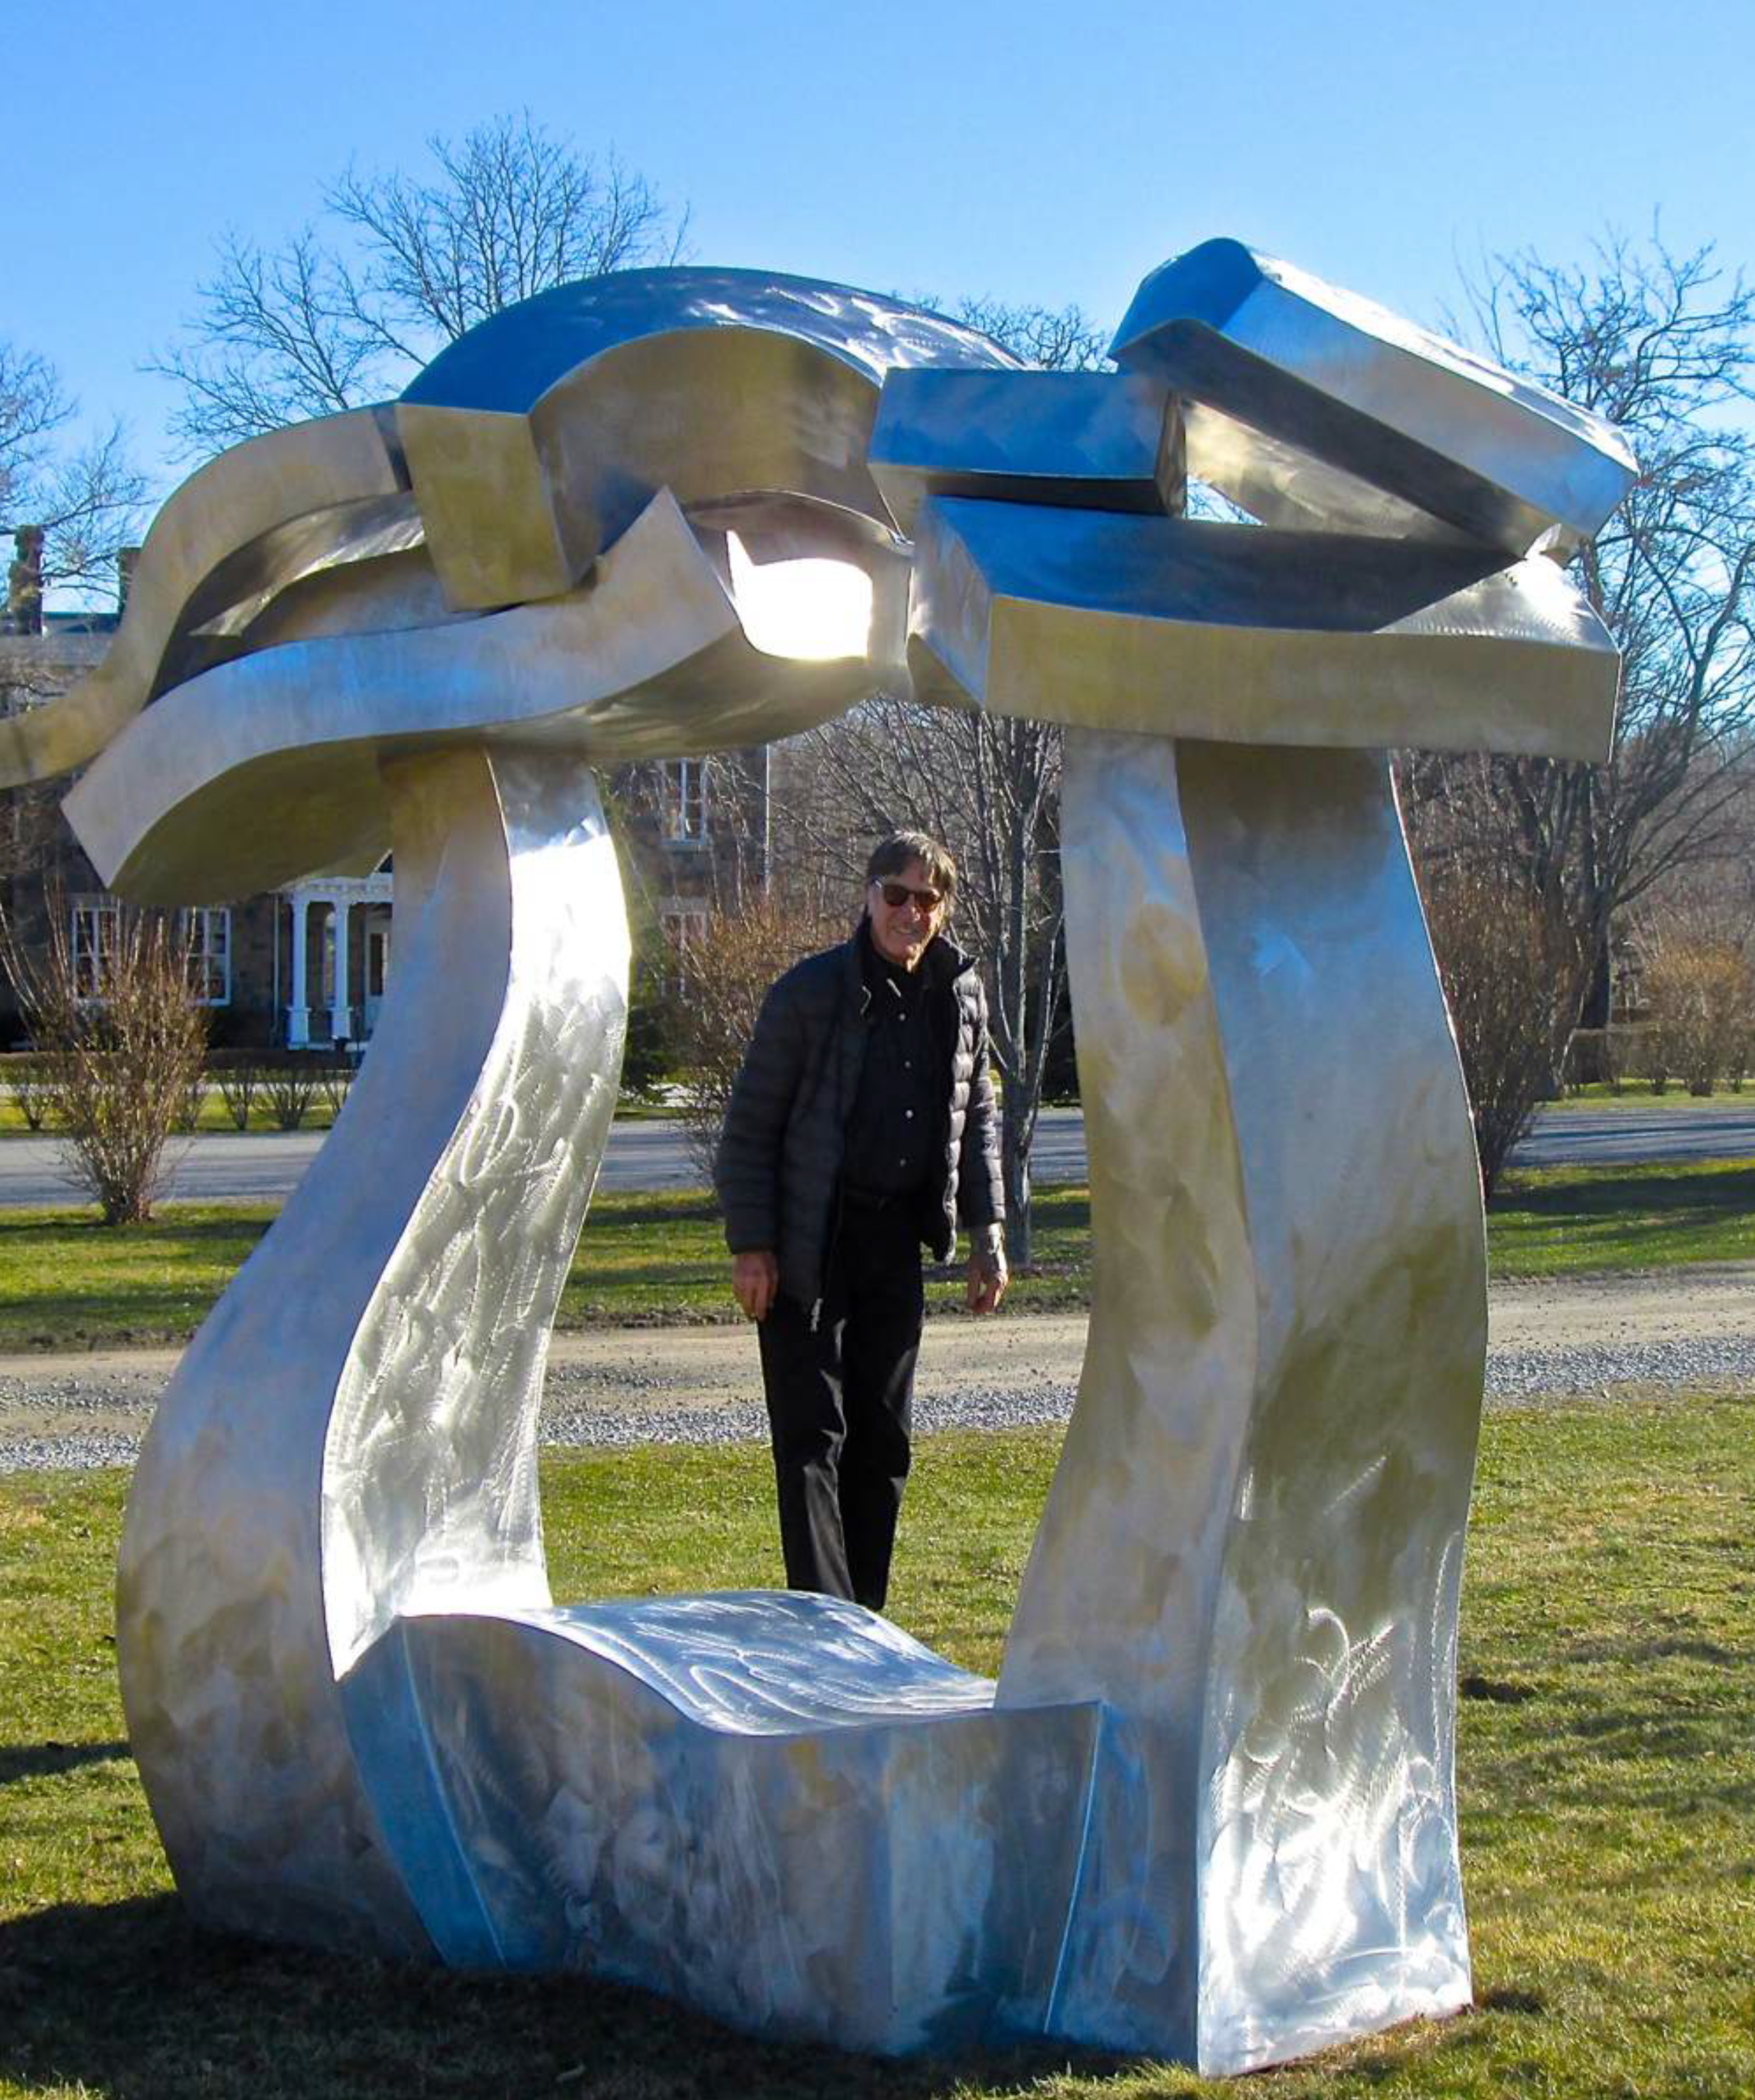 Hans Van de Bovenkamp with one of his sculptures